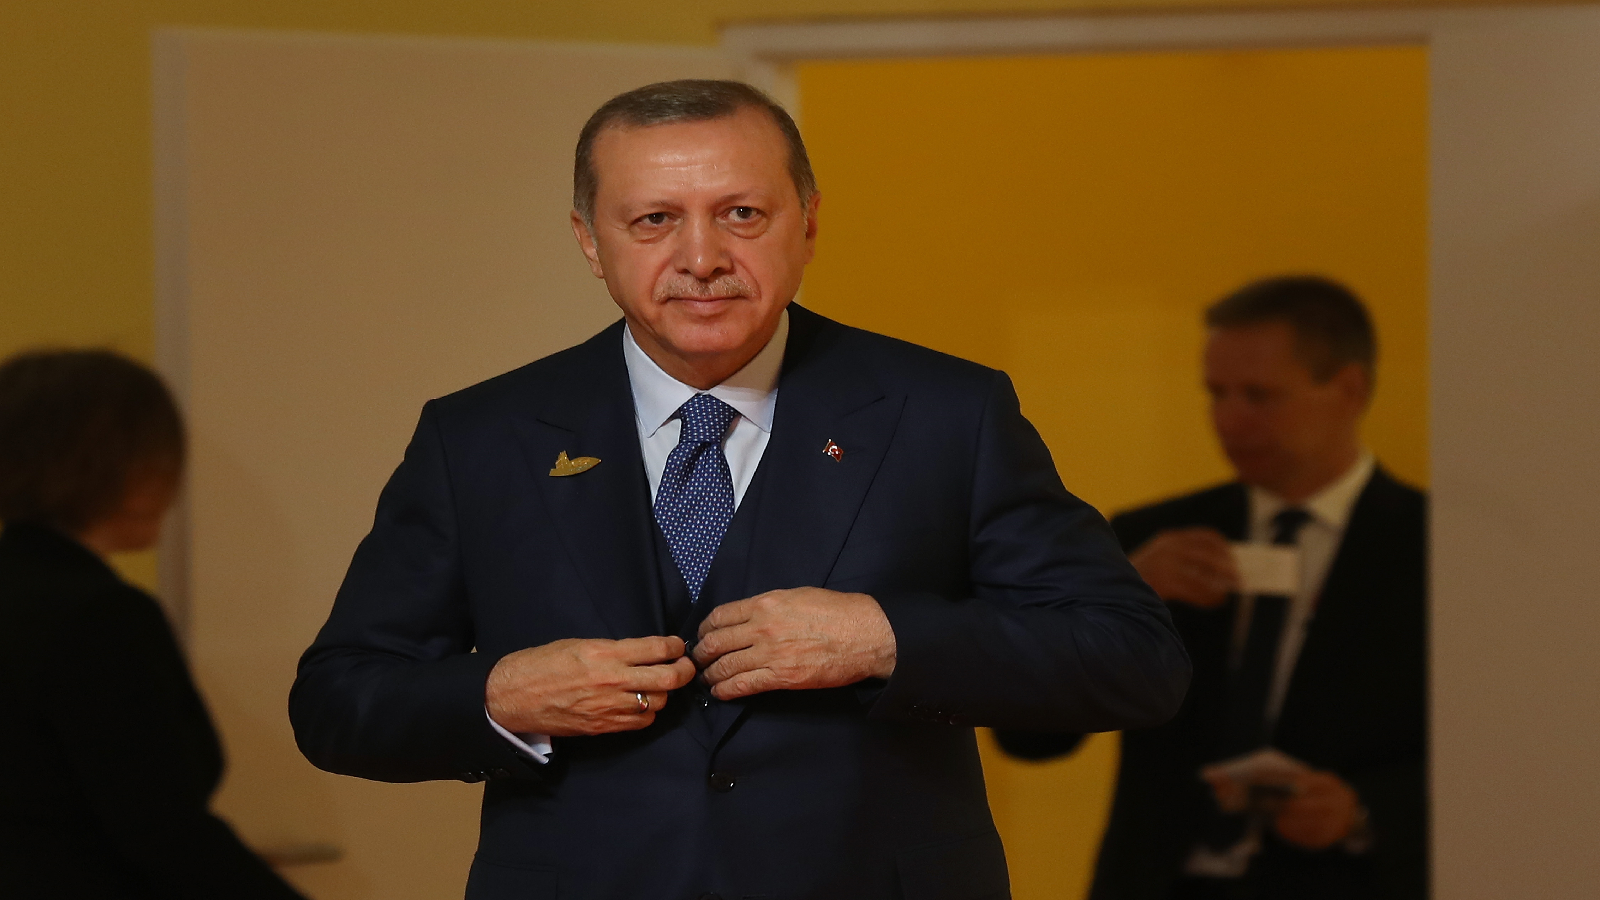 واشنطن وأوروبا تطلبان إيضاحات لقرار أردوغان طرد السفراء ال10